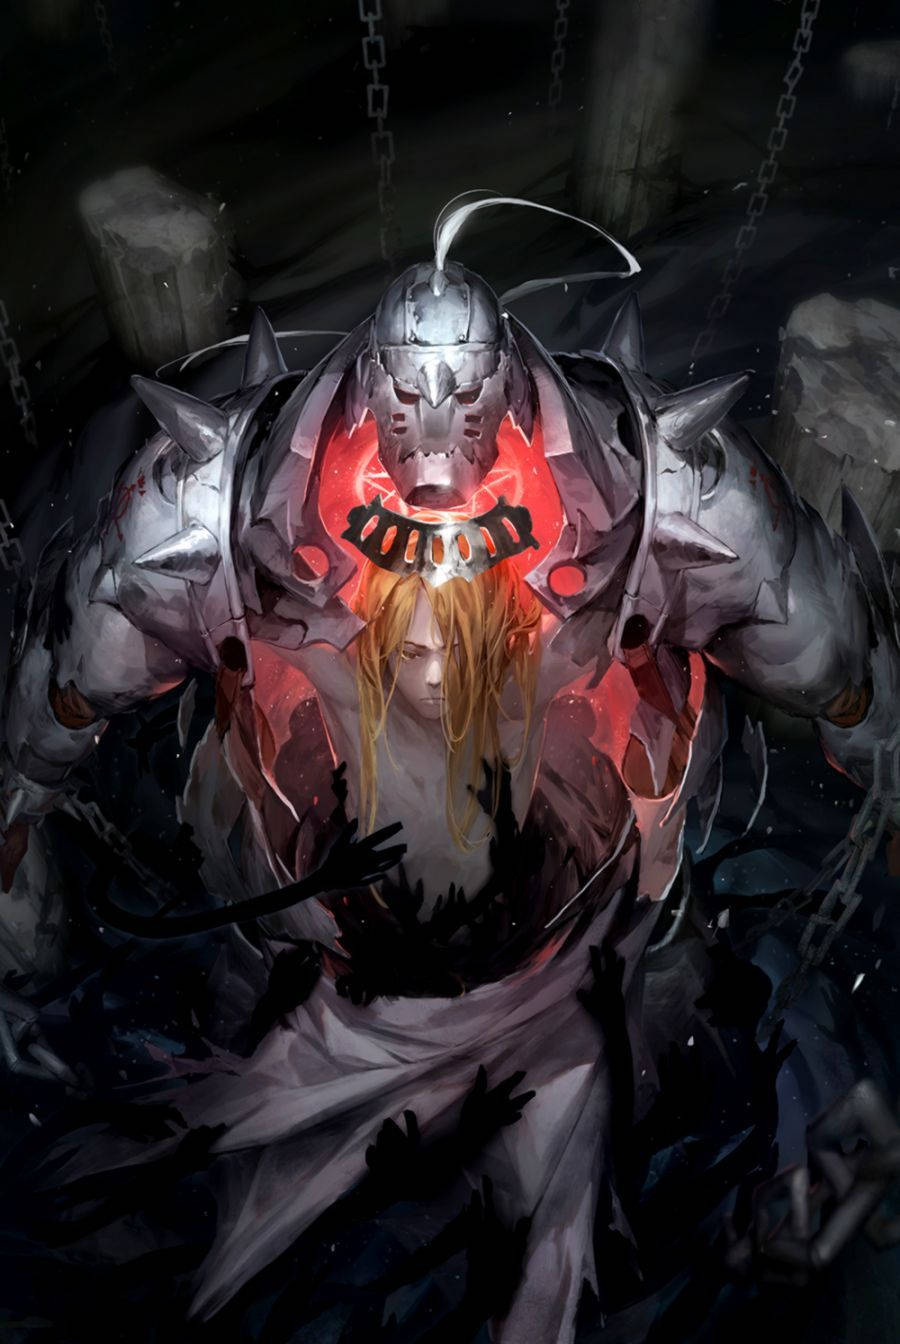 Top 999 Fullmetal Alchemist Brotherhood Wallpaper Full HD 4K Free To Use